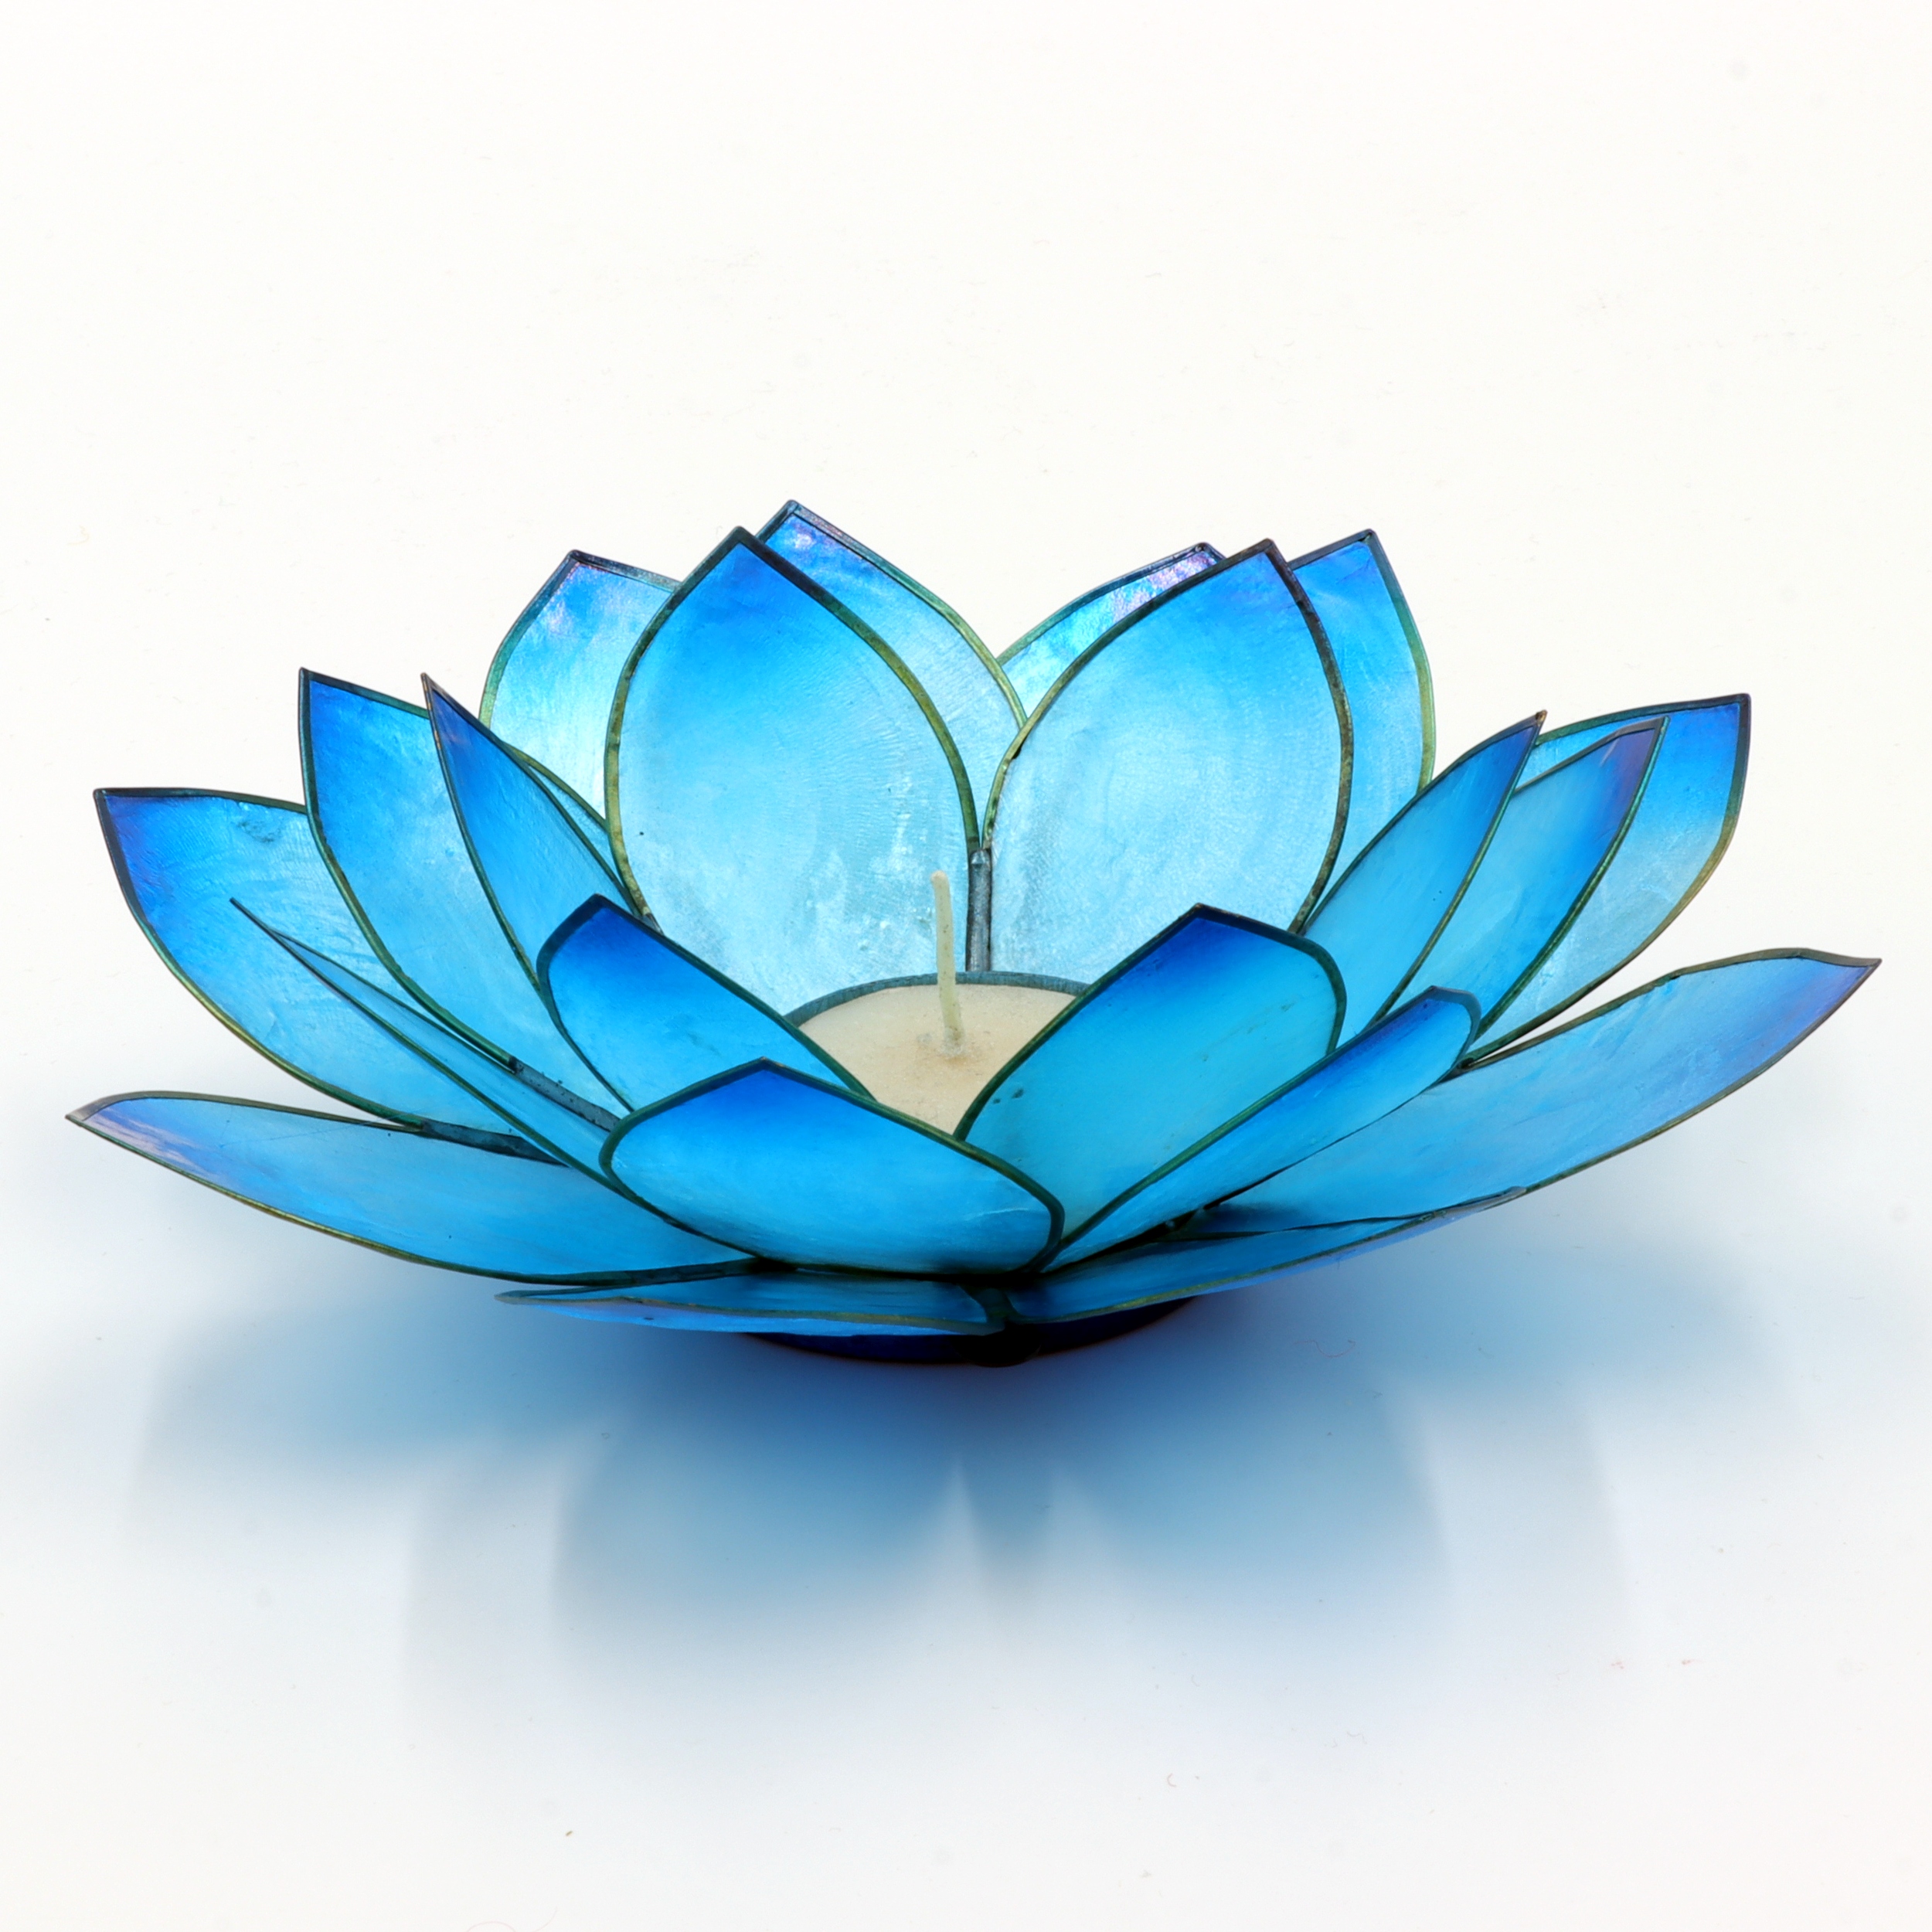 Teelichthalter als Lotusblüte mit filigranen Blättern aus der Capiz-Muschel - leuchtende sommerliche Farben